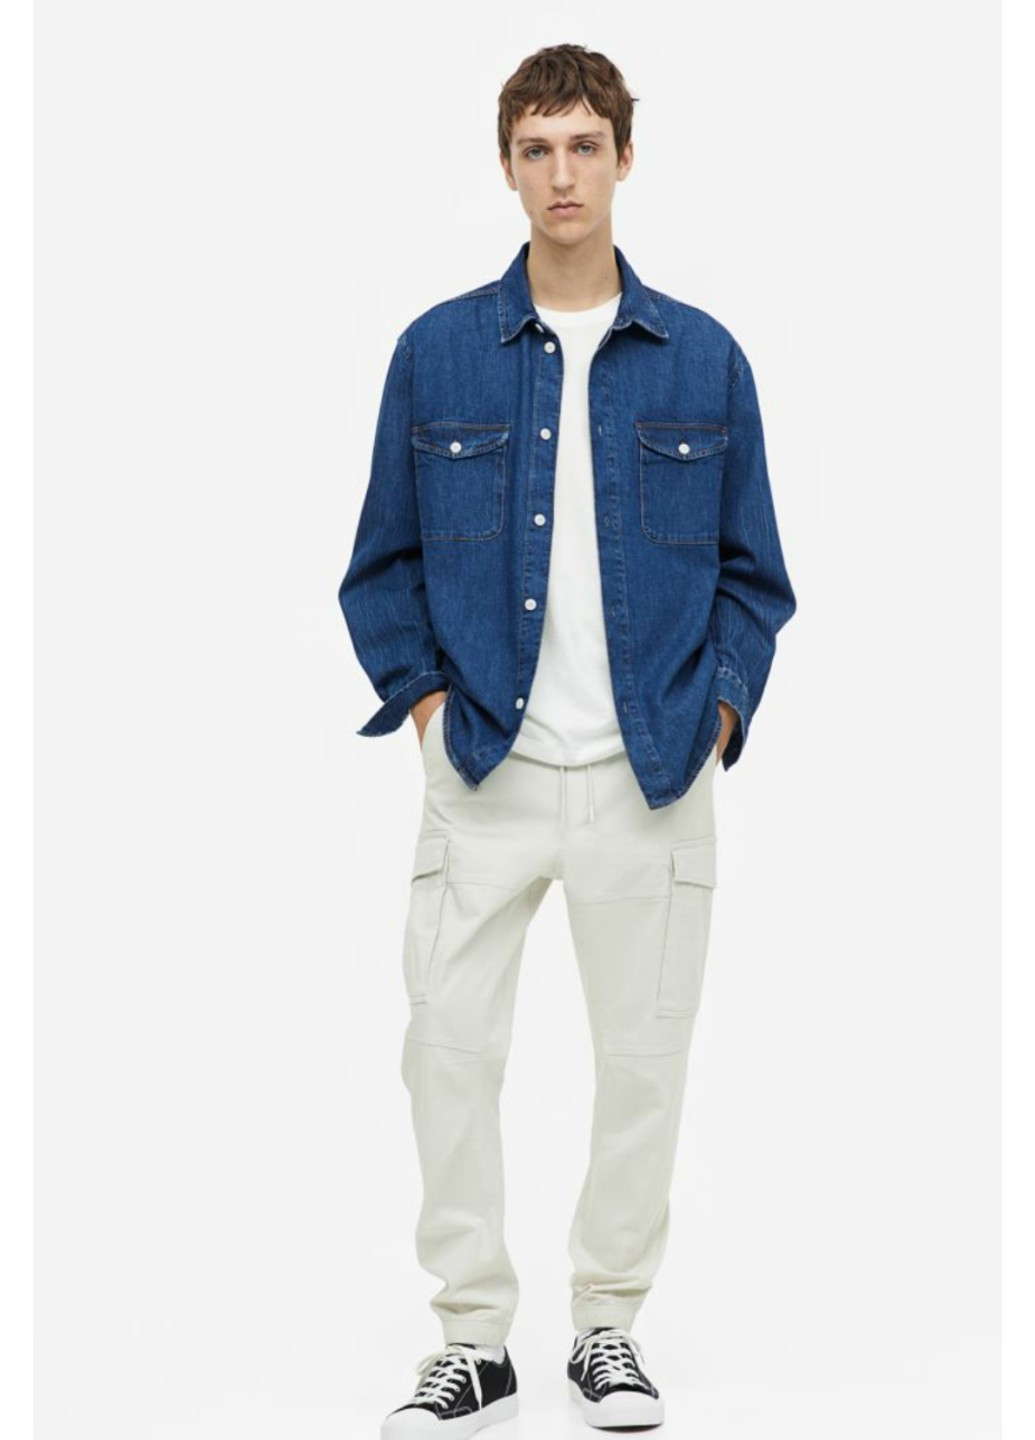 Белые повседневный летние брюки H&M